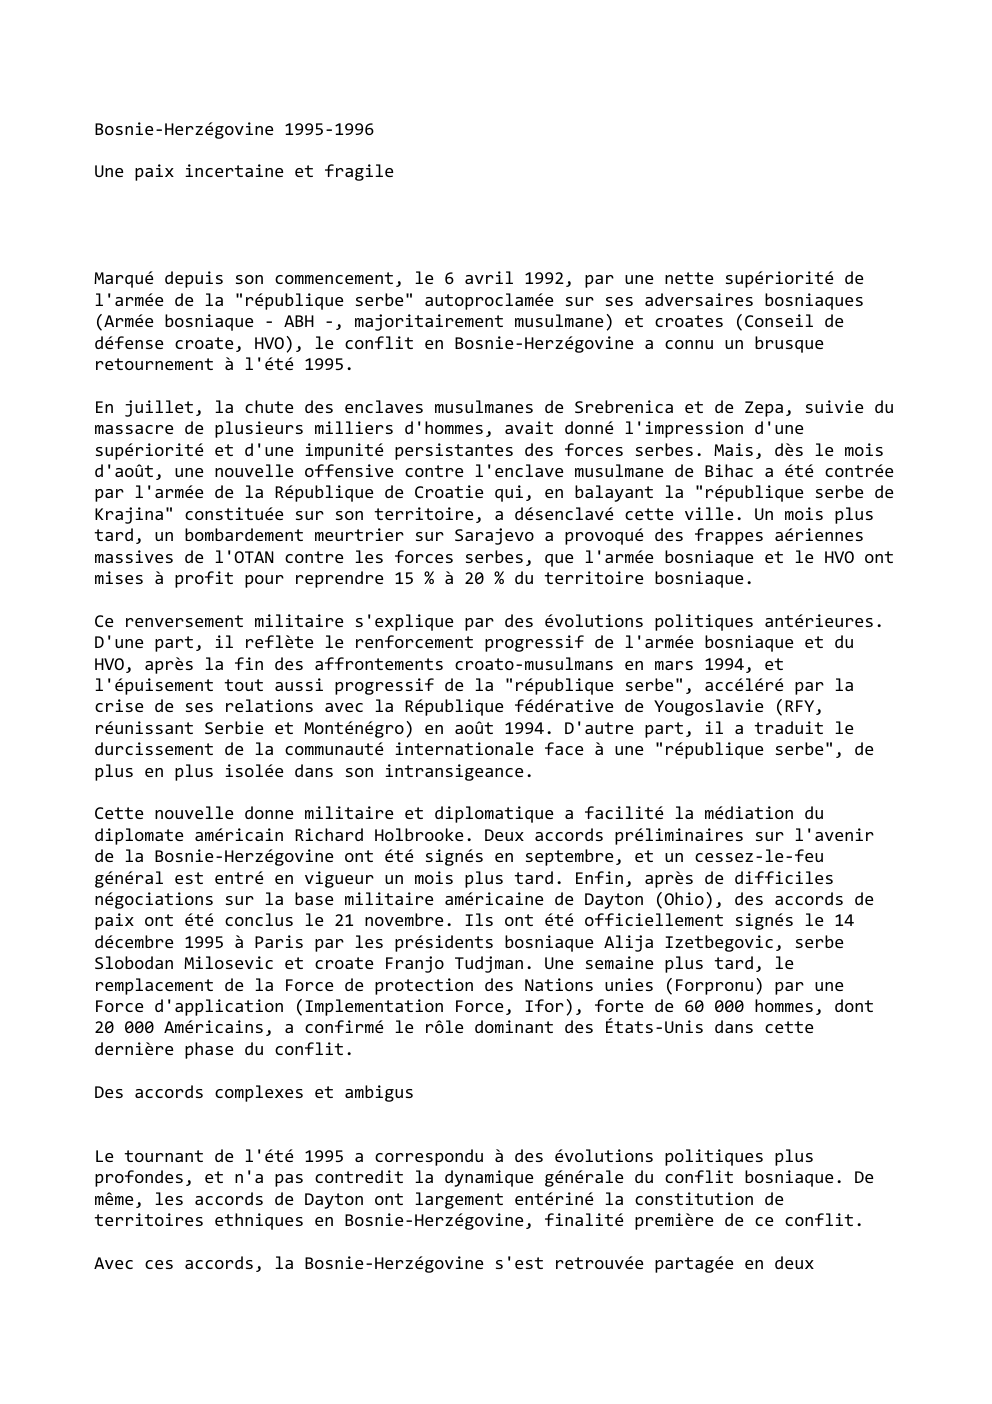 Prévisualisation du document Bosnie-Herzégovine 1995-1996
Une paix incertaine et fragile

Marqué depuis son commencement, le 6 avril 1992, par une nette supériorité de...